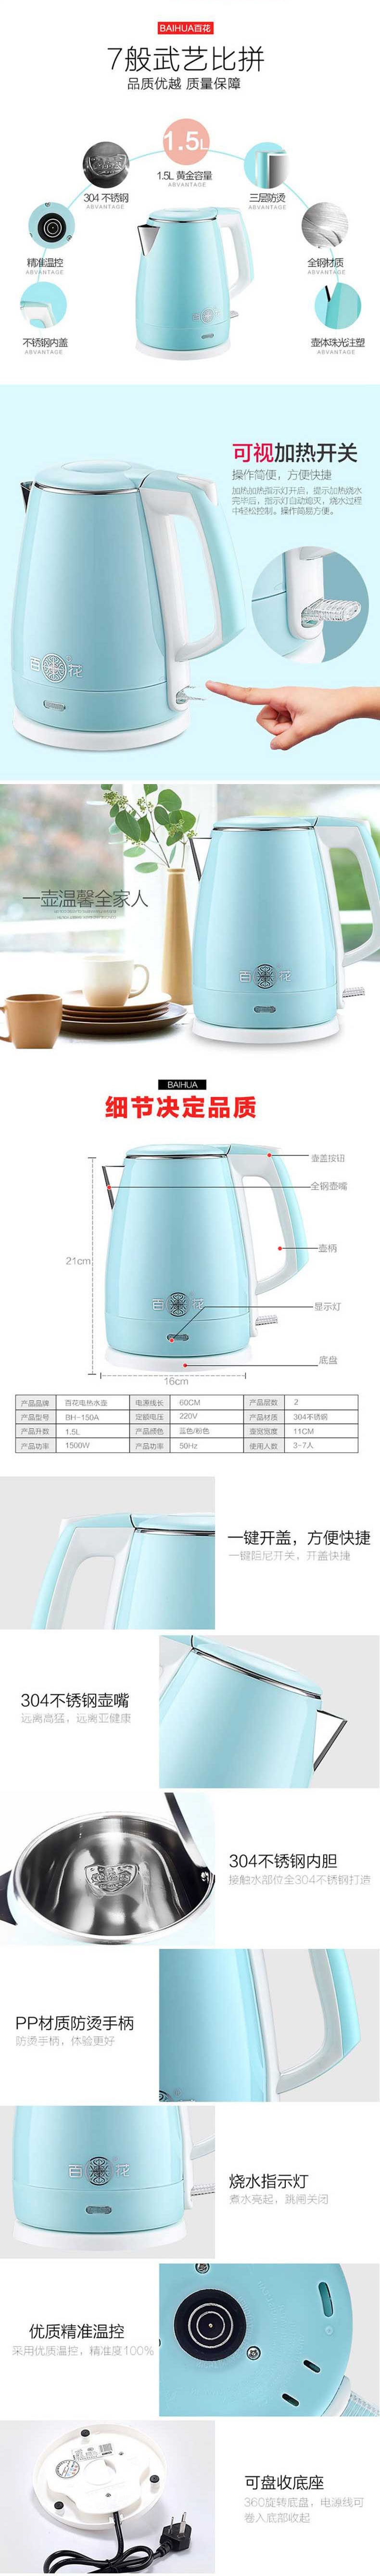 百花 电热水壶 BH-150A 食品级304不锈钢自动断电双层保温烧水壶